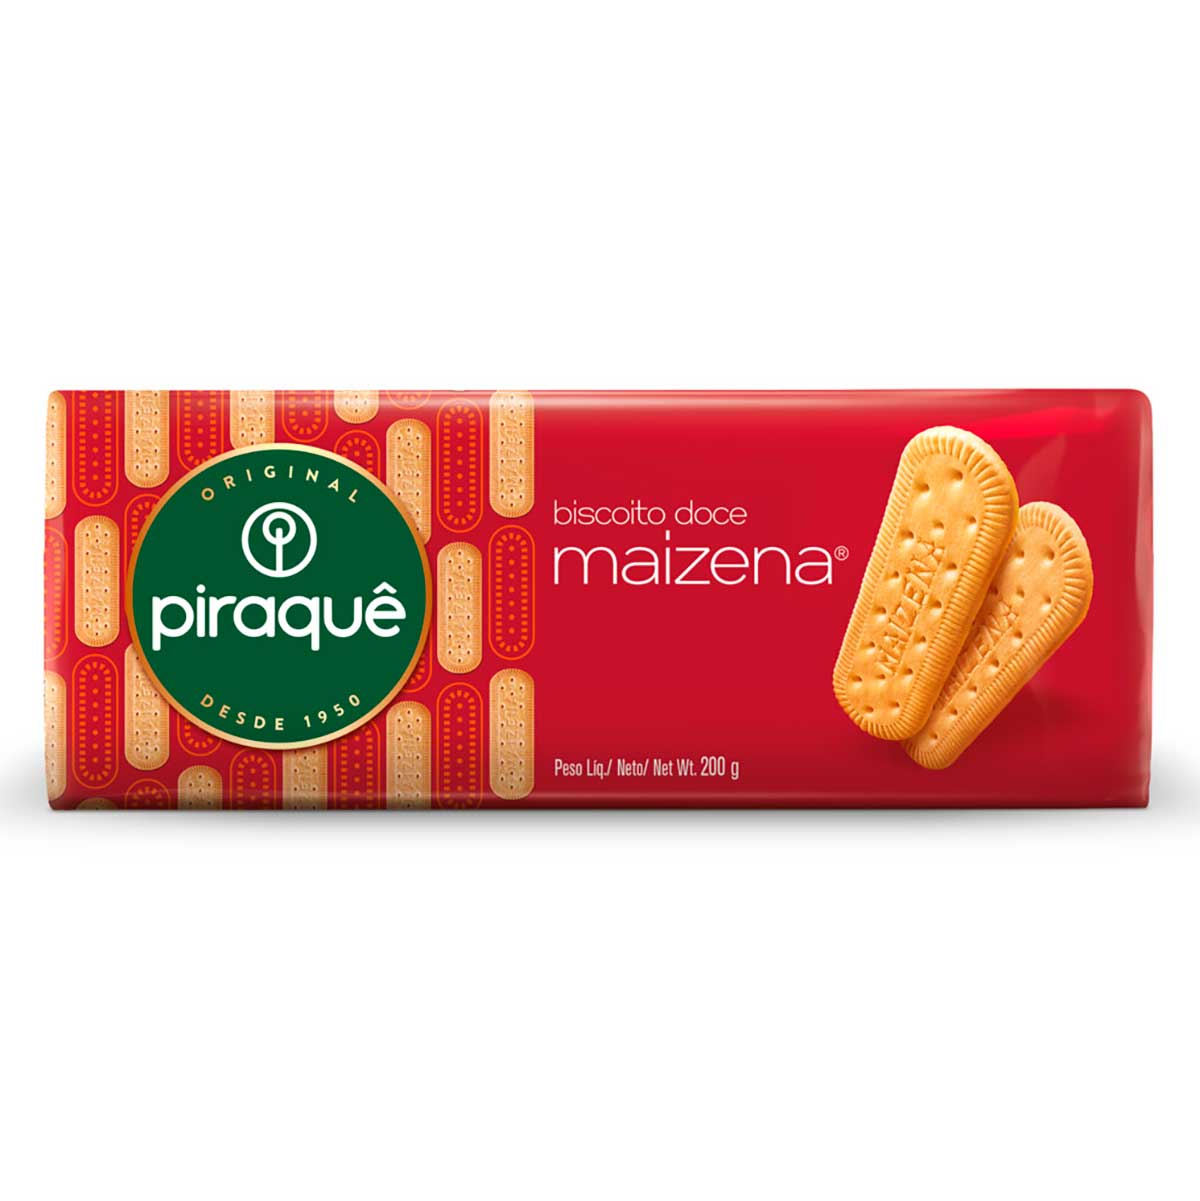 biscoito-maizena-piraque-200g-1.jpg